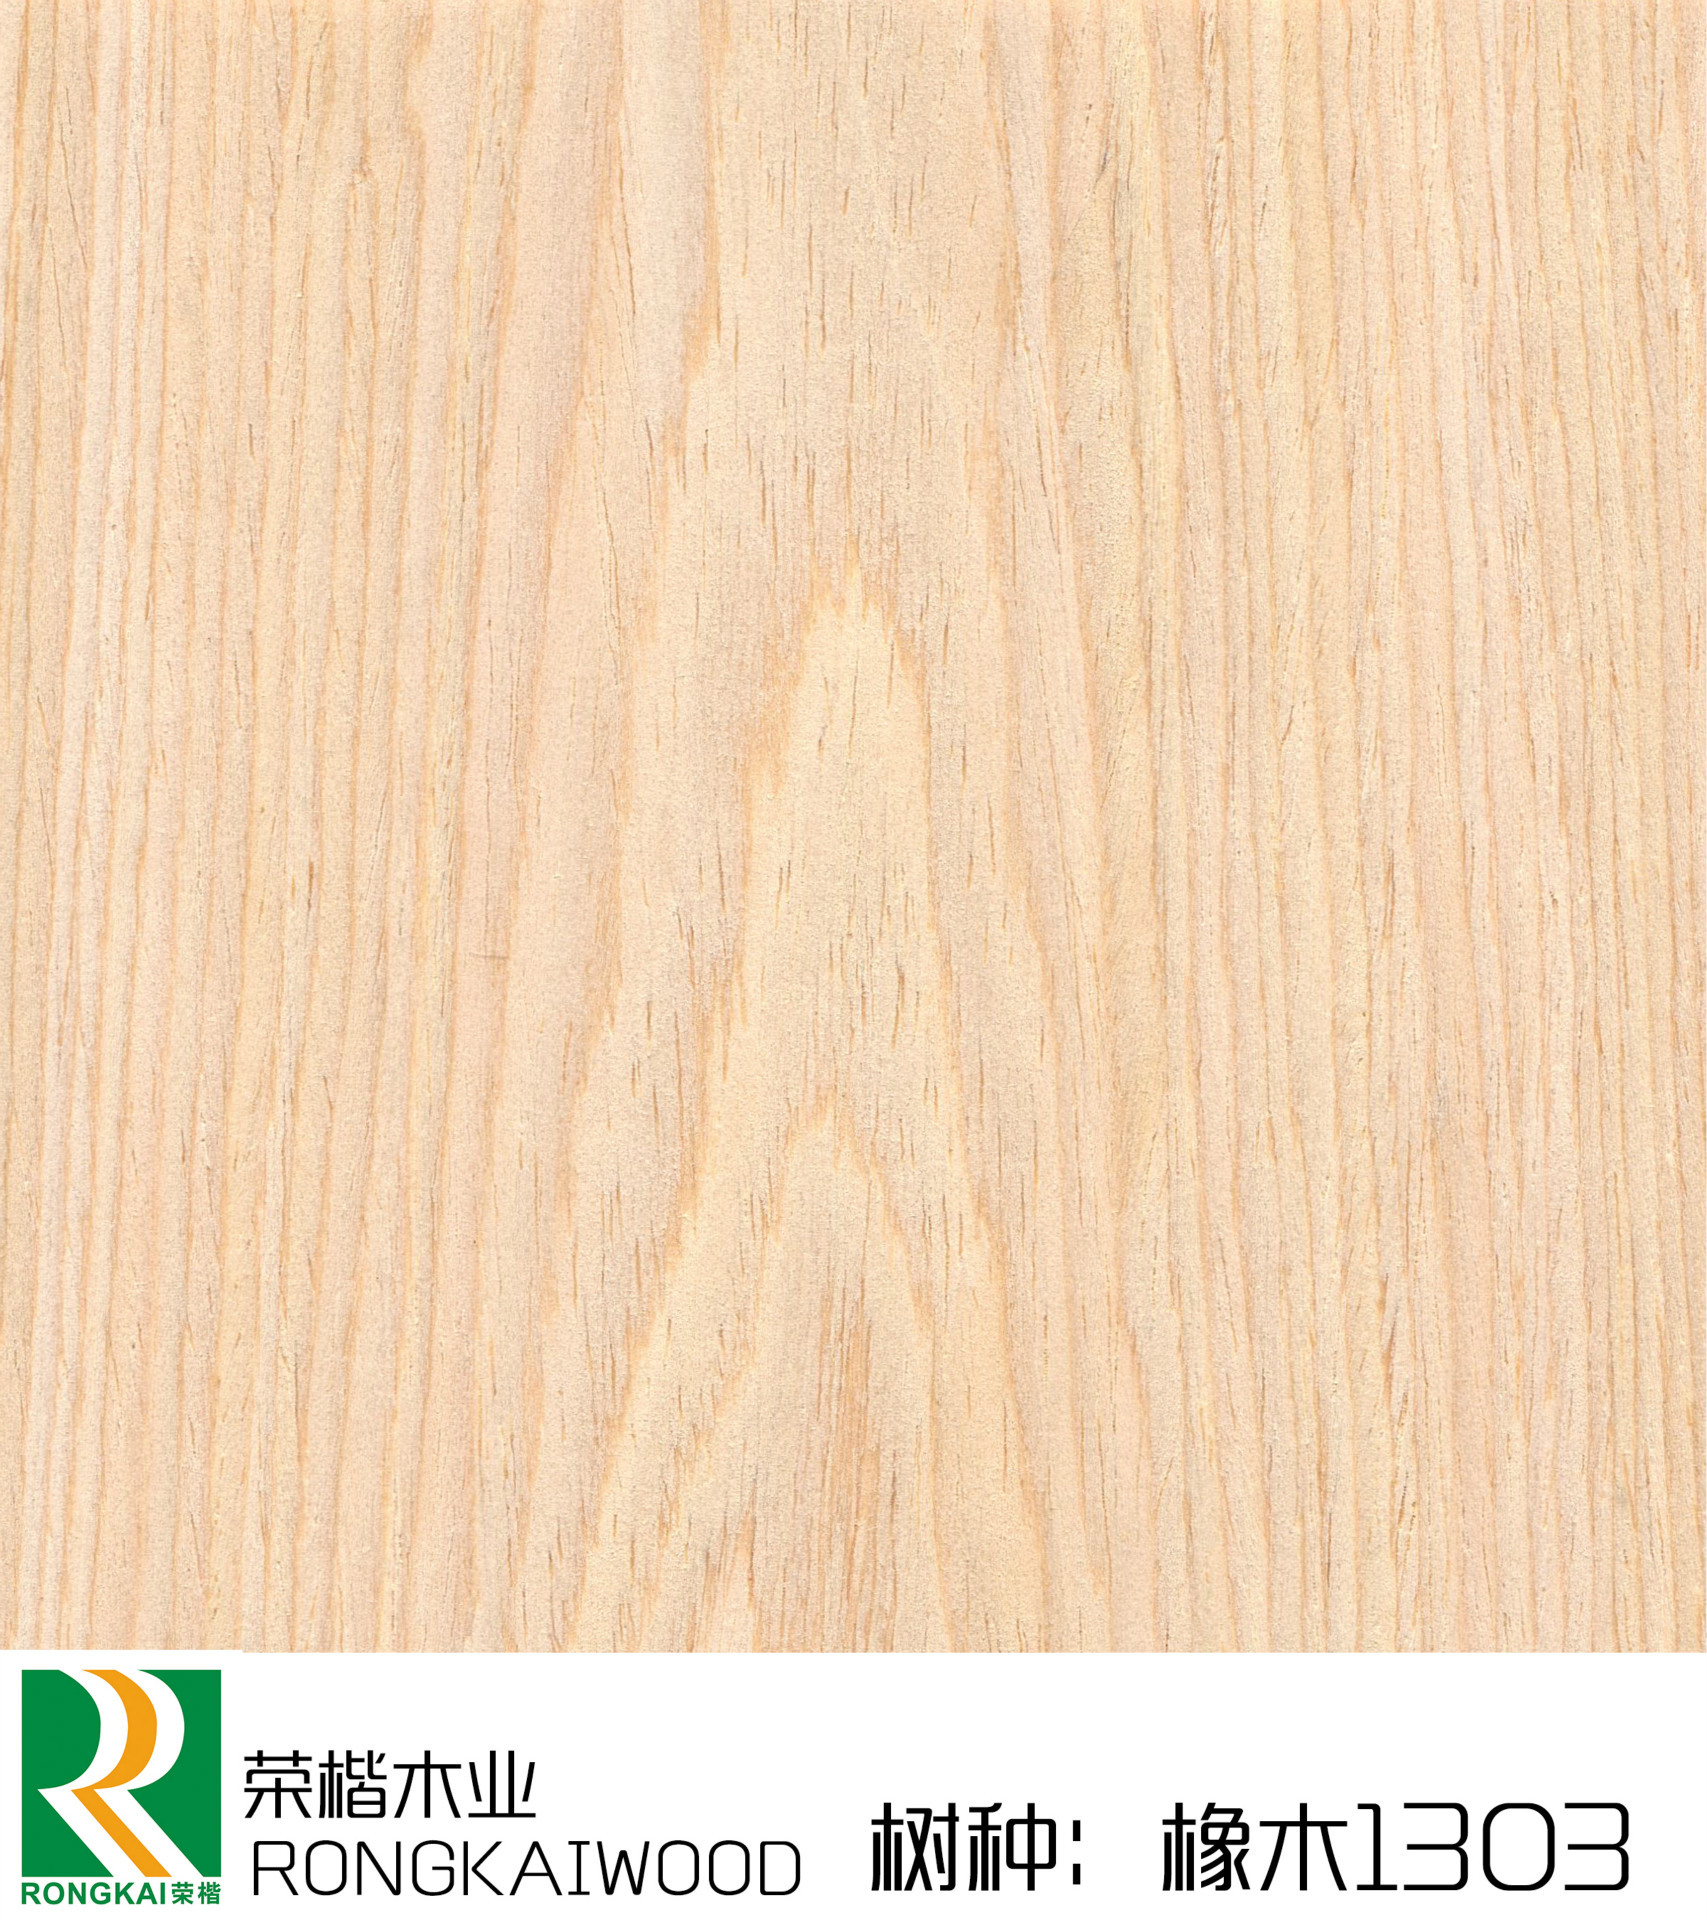 橡木1303/科技木/尺寸可定制/方便使用/量大从优/厂家直销